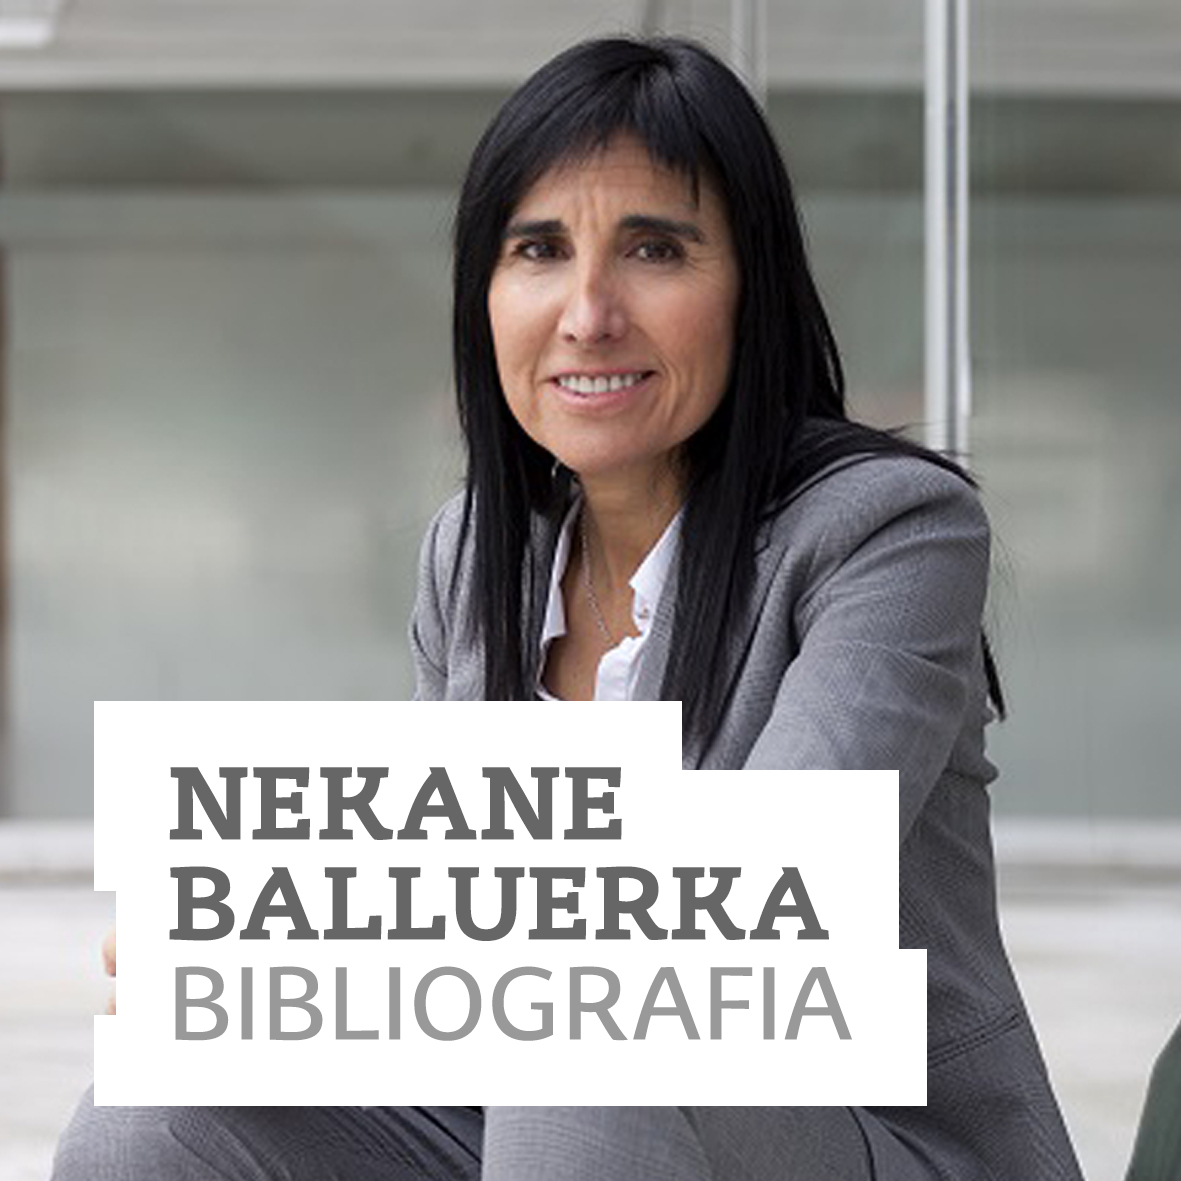 Nekane Balluerka